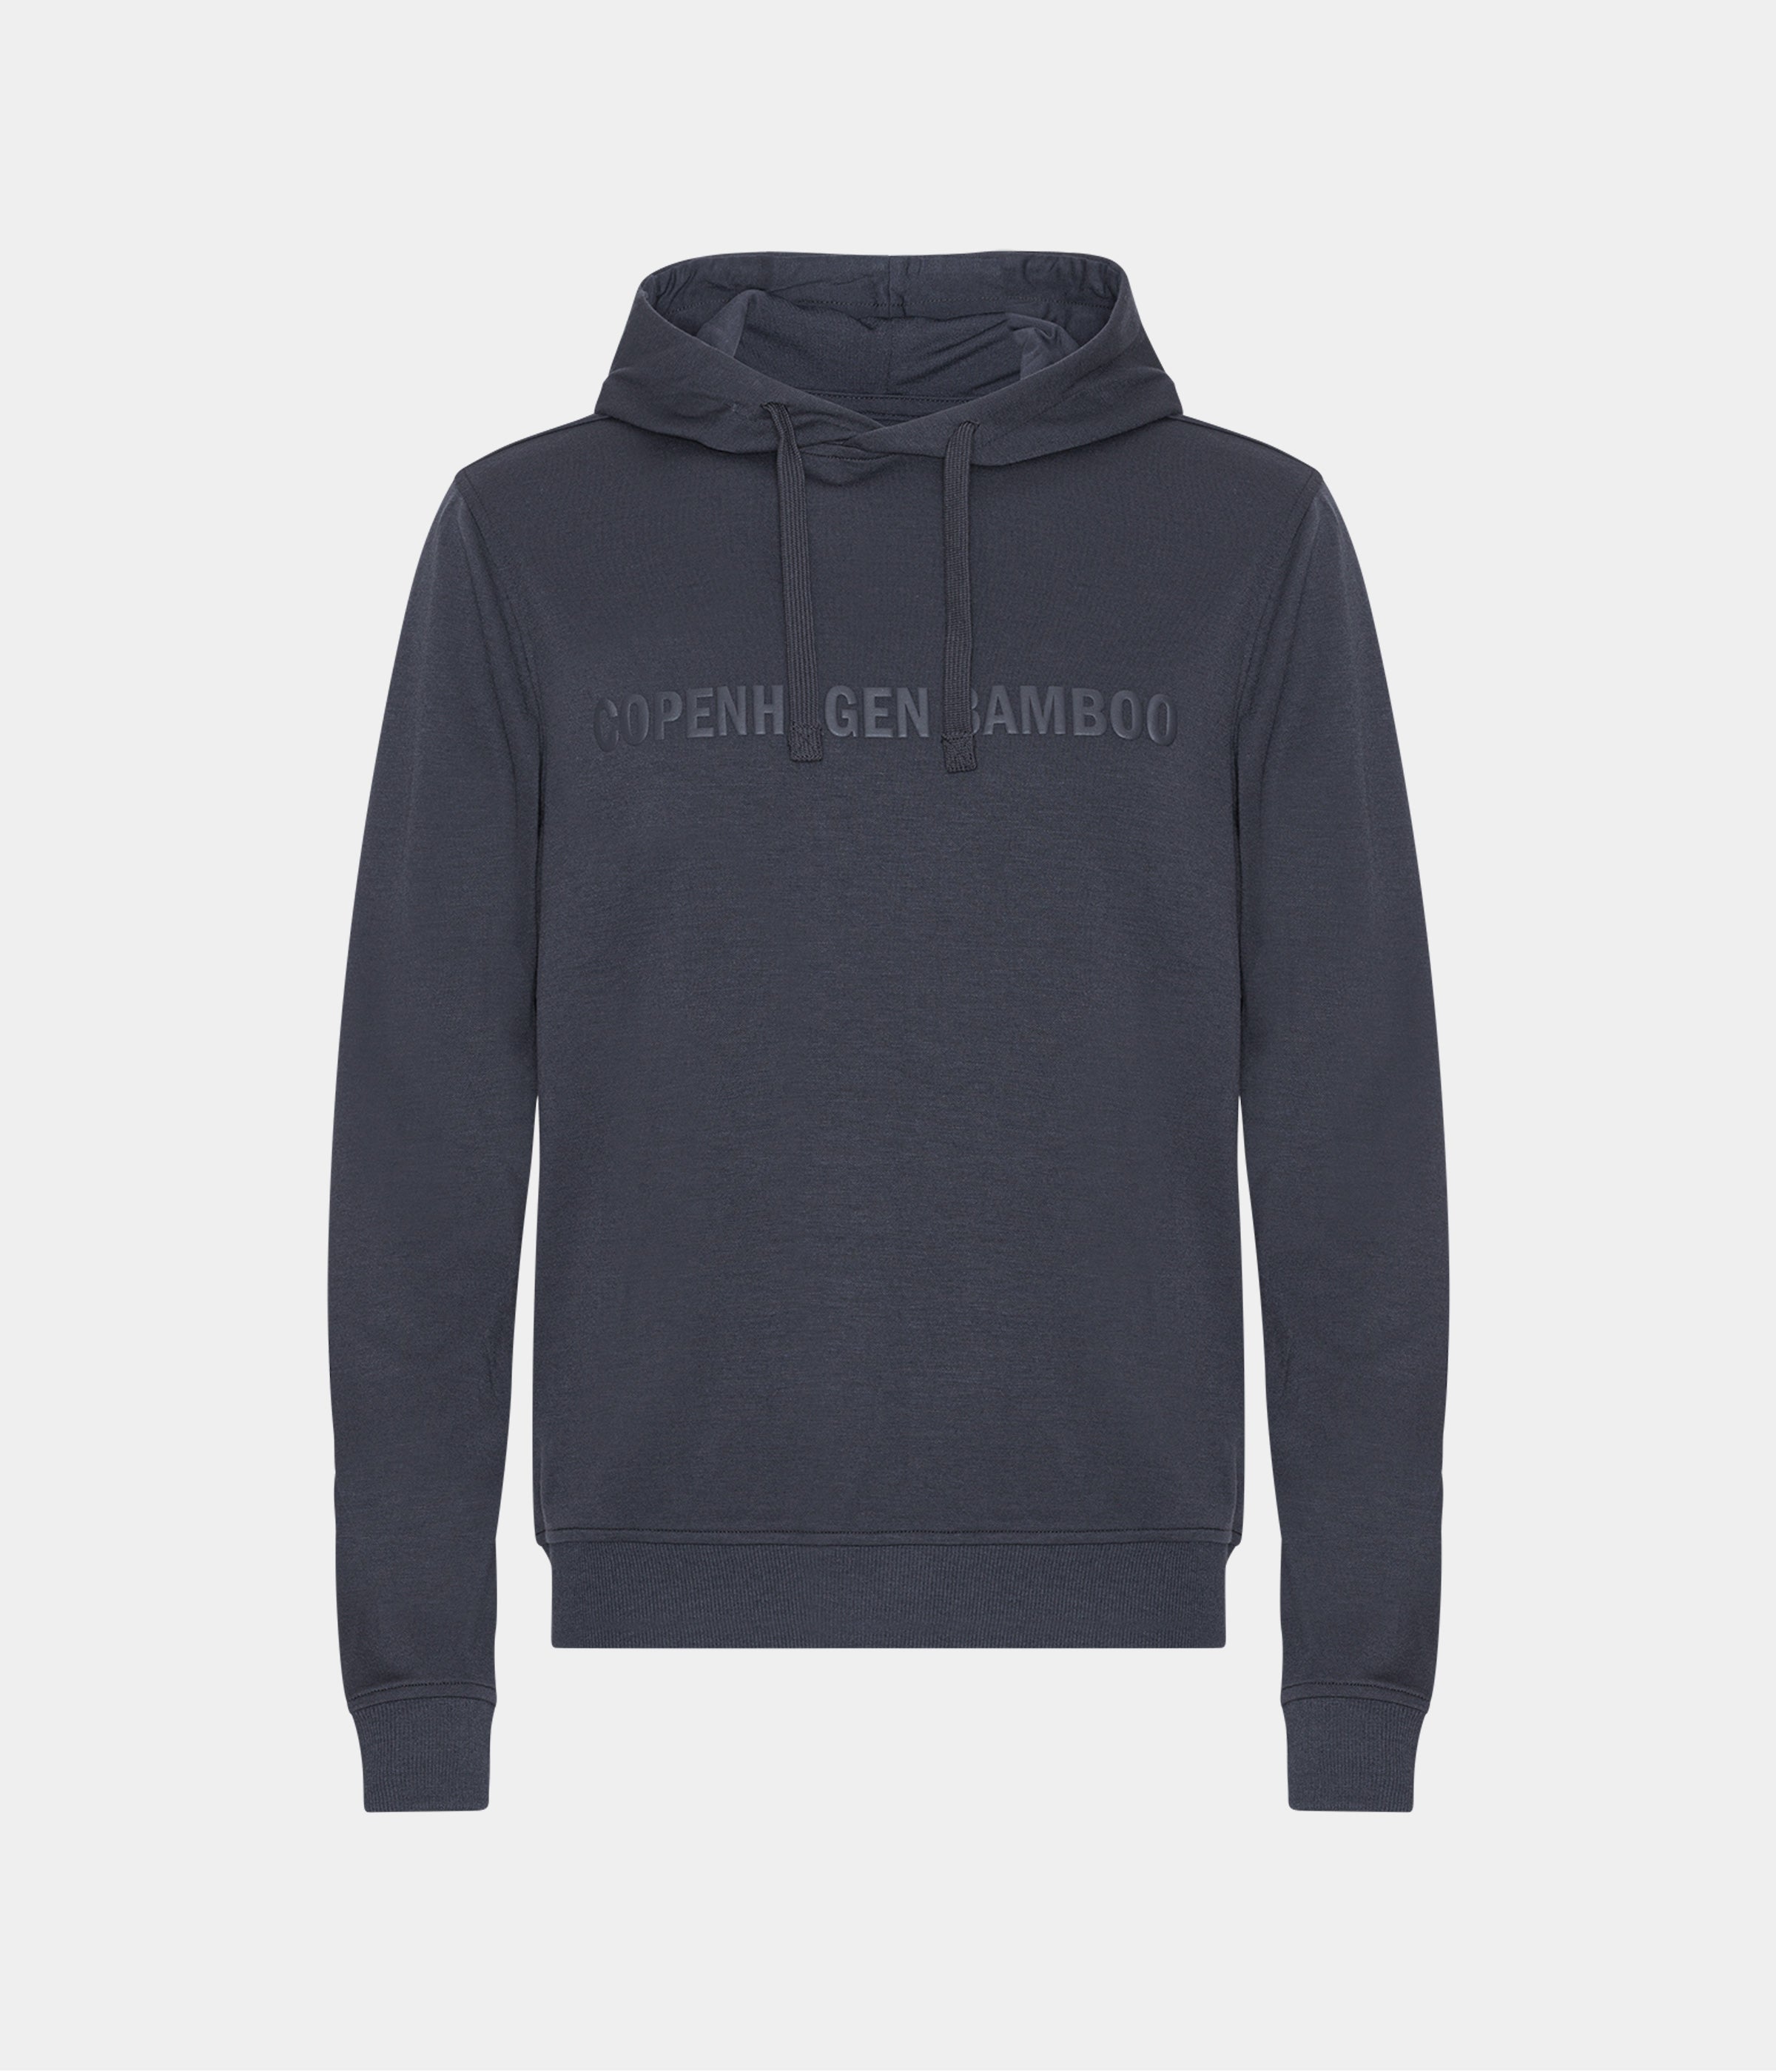 Mørkegrå bambus hoodie til mænd med logo fra Copenhagen Bamboo, XS